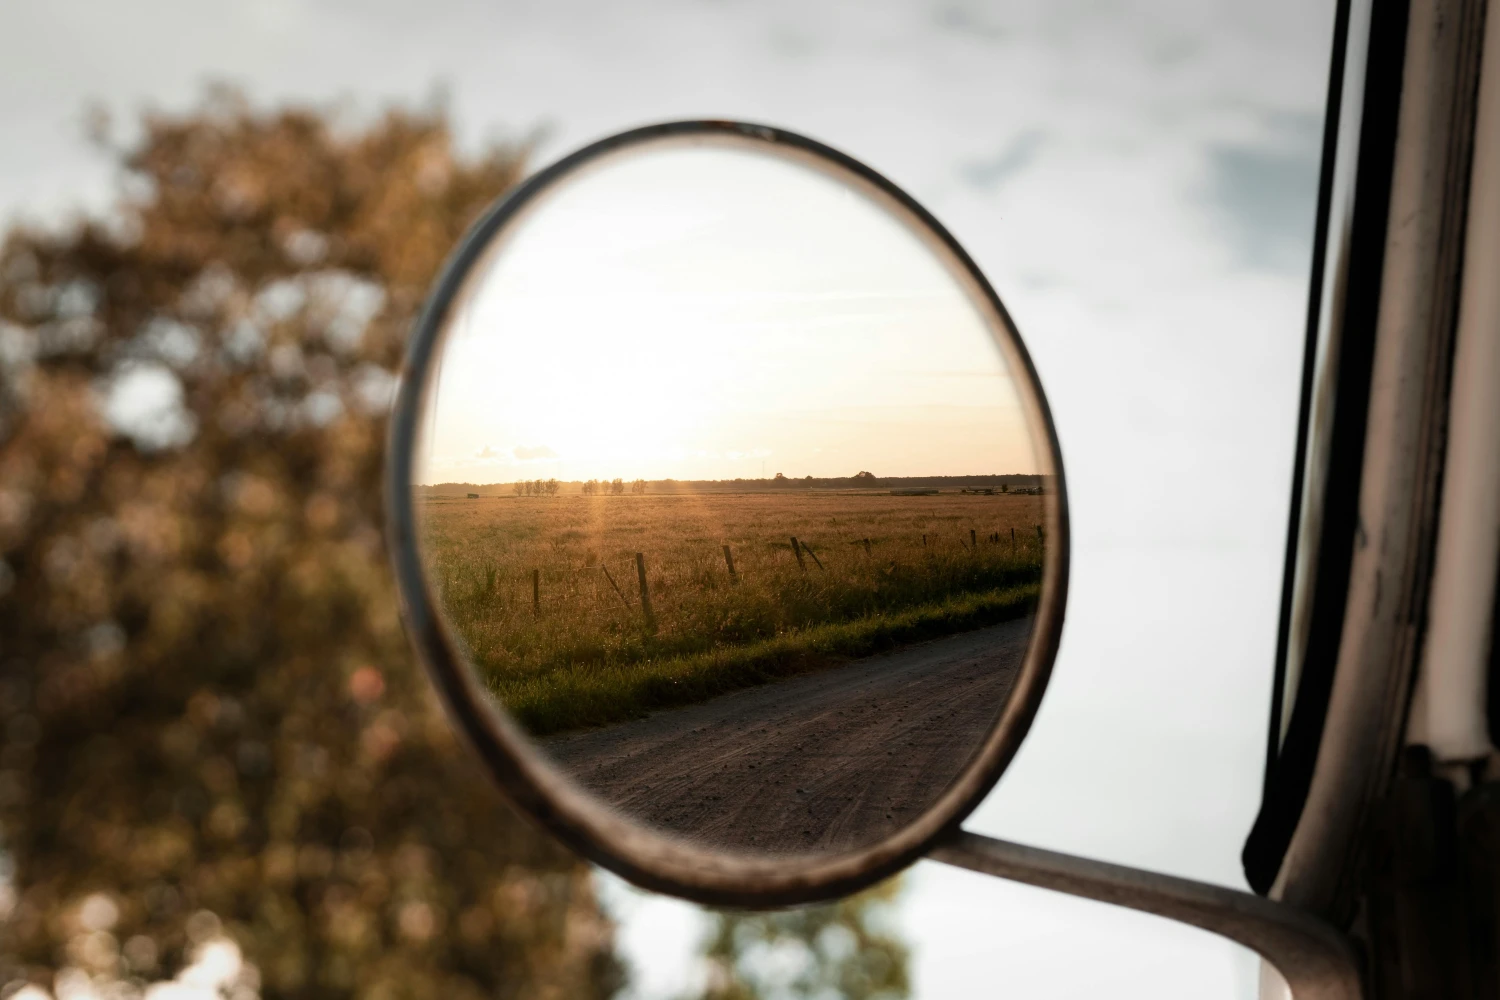 Blick auf die Wiese und den Sonnenuntergang im Spiegel eines Fahrzeugs